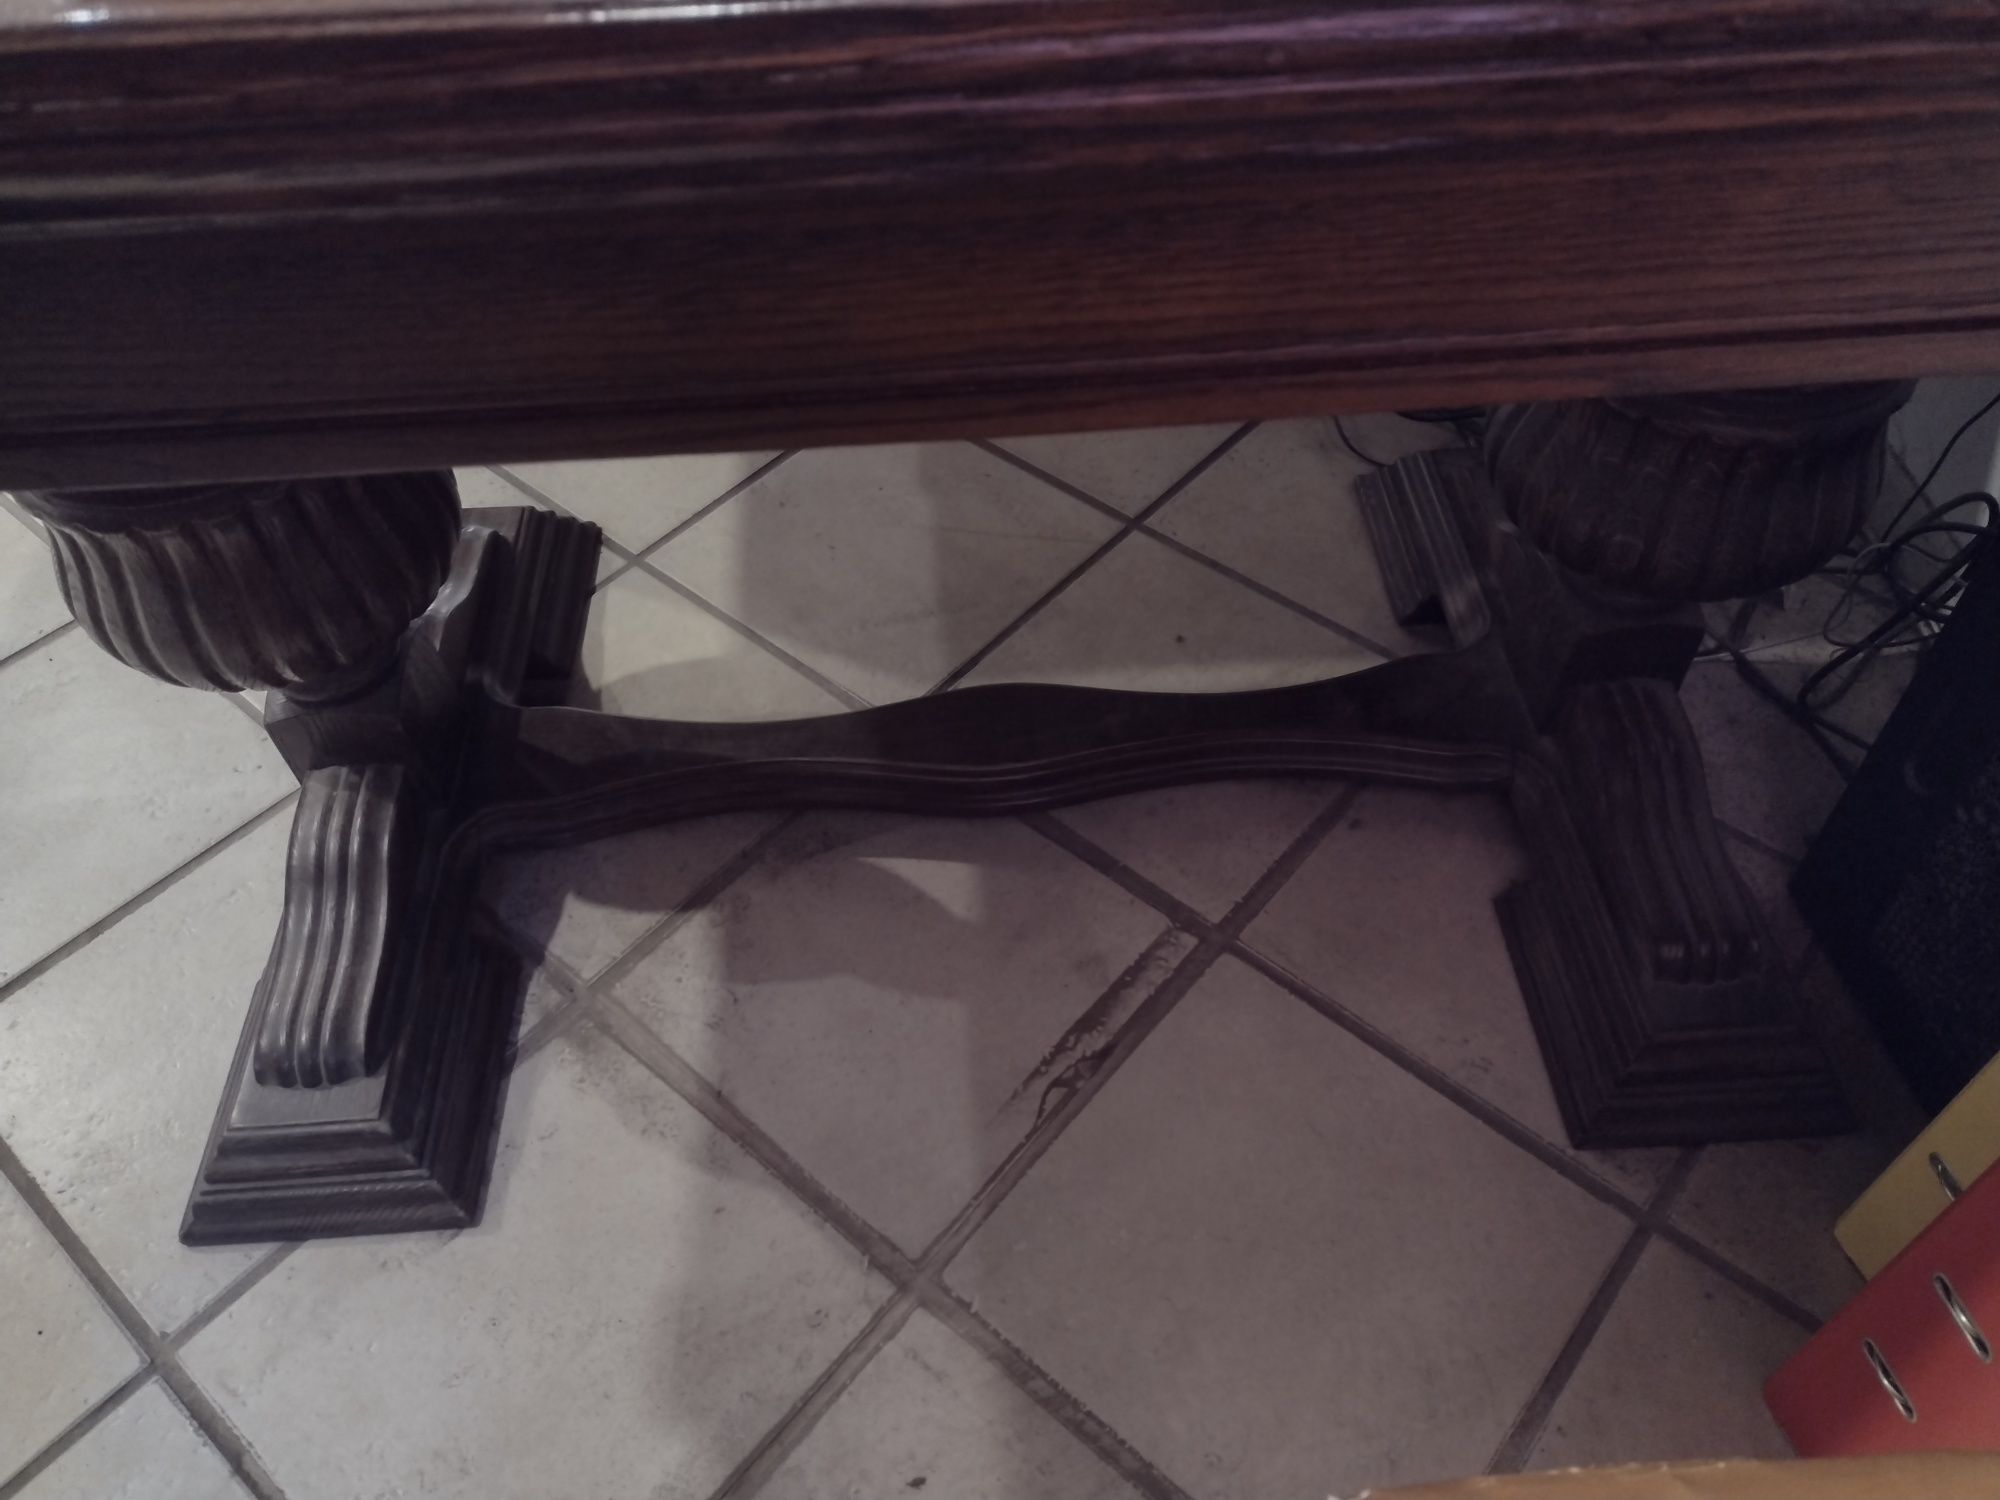 Antyk stół drewniany rozkładany 140cm 235cm